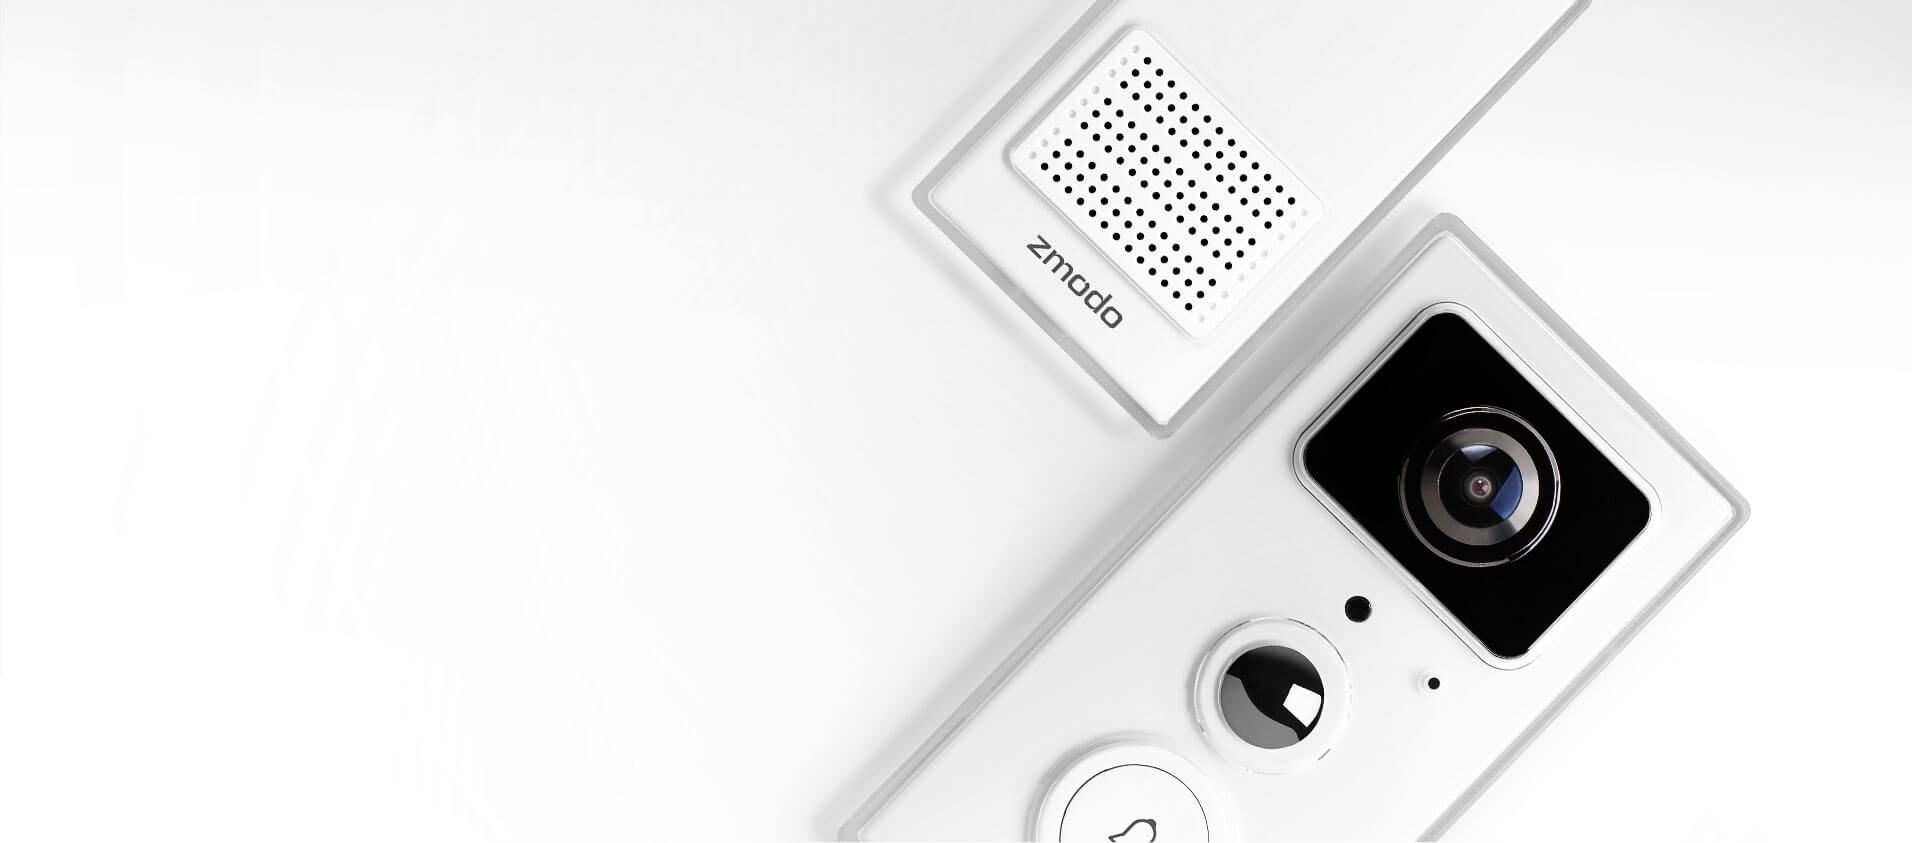 greet smart doorbell with indoor chime